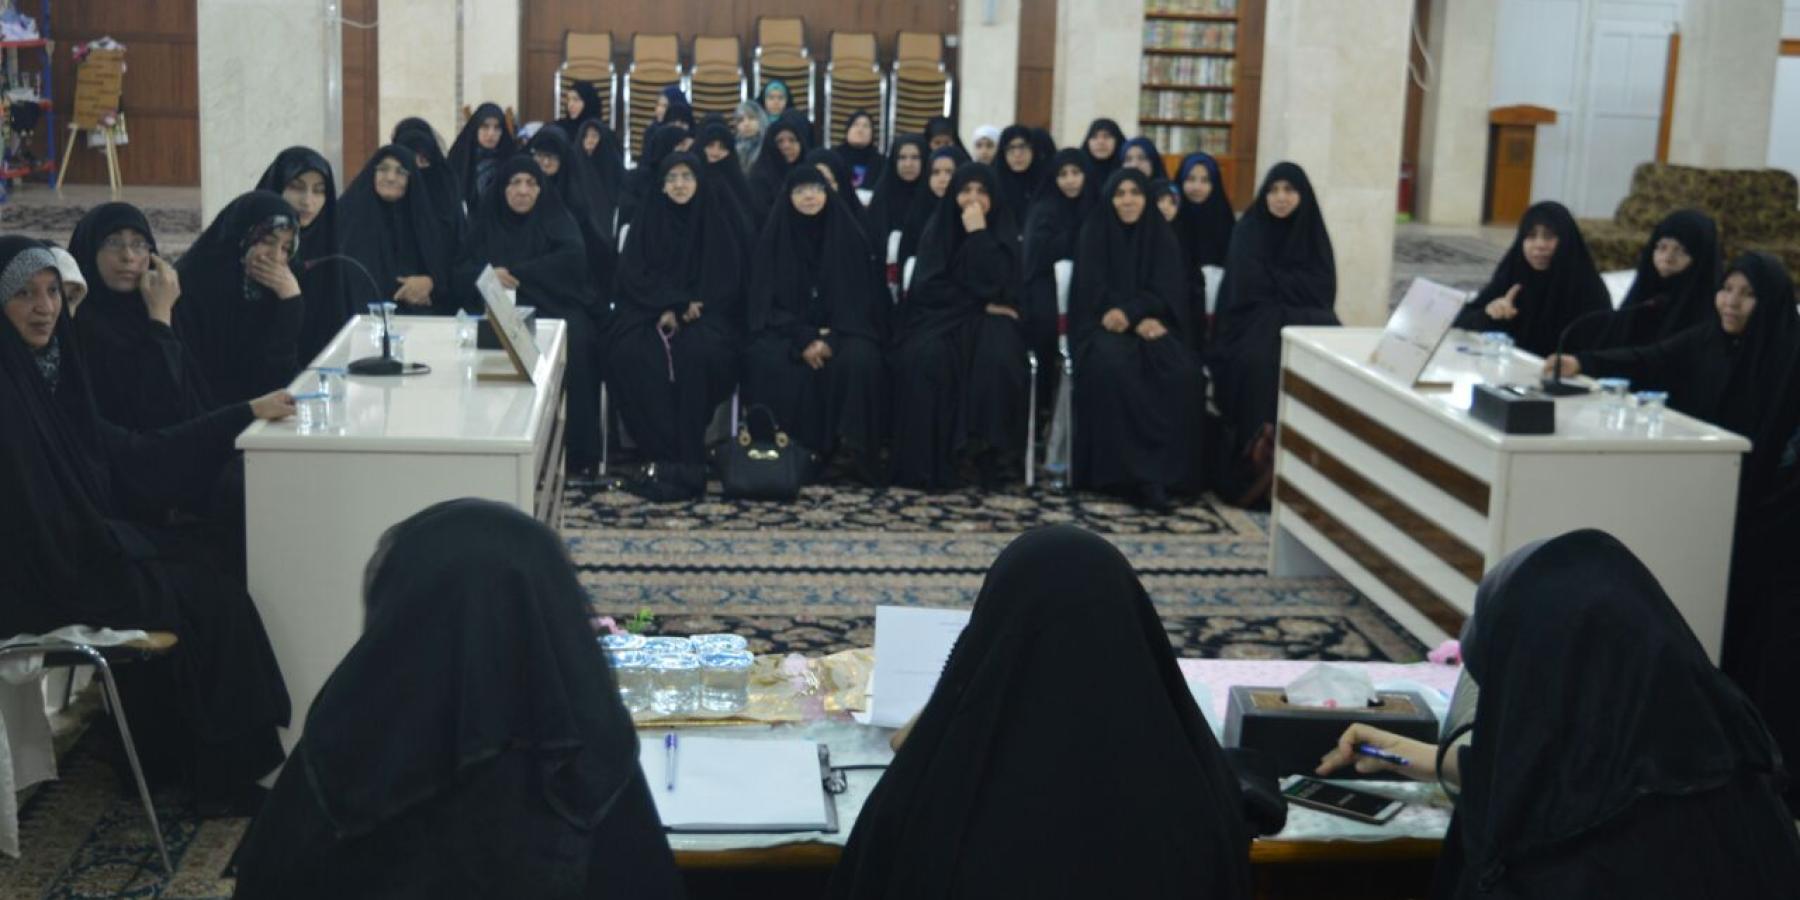 شعبة التعليم الديني النسوي في العتبة العلوية تطلق سلسلة مسابقات إضاءات علوية